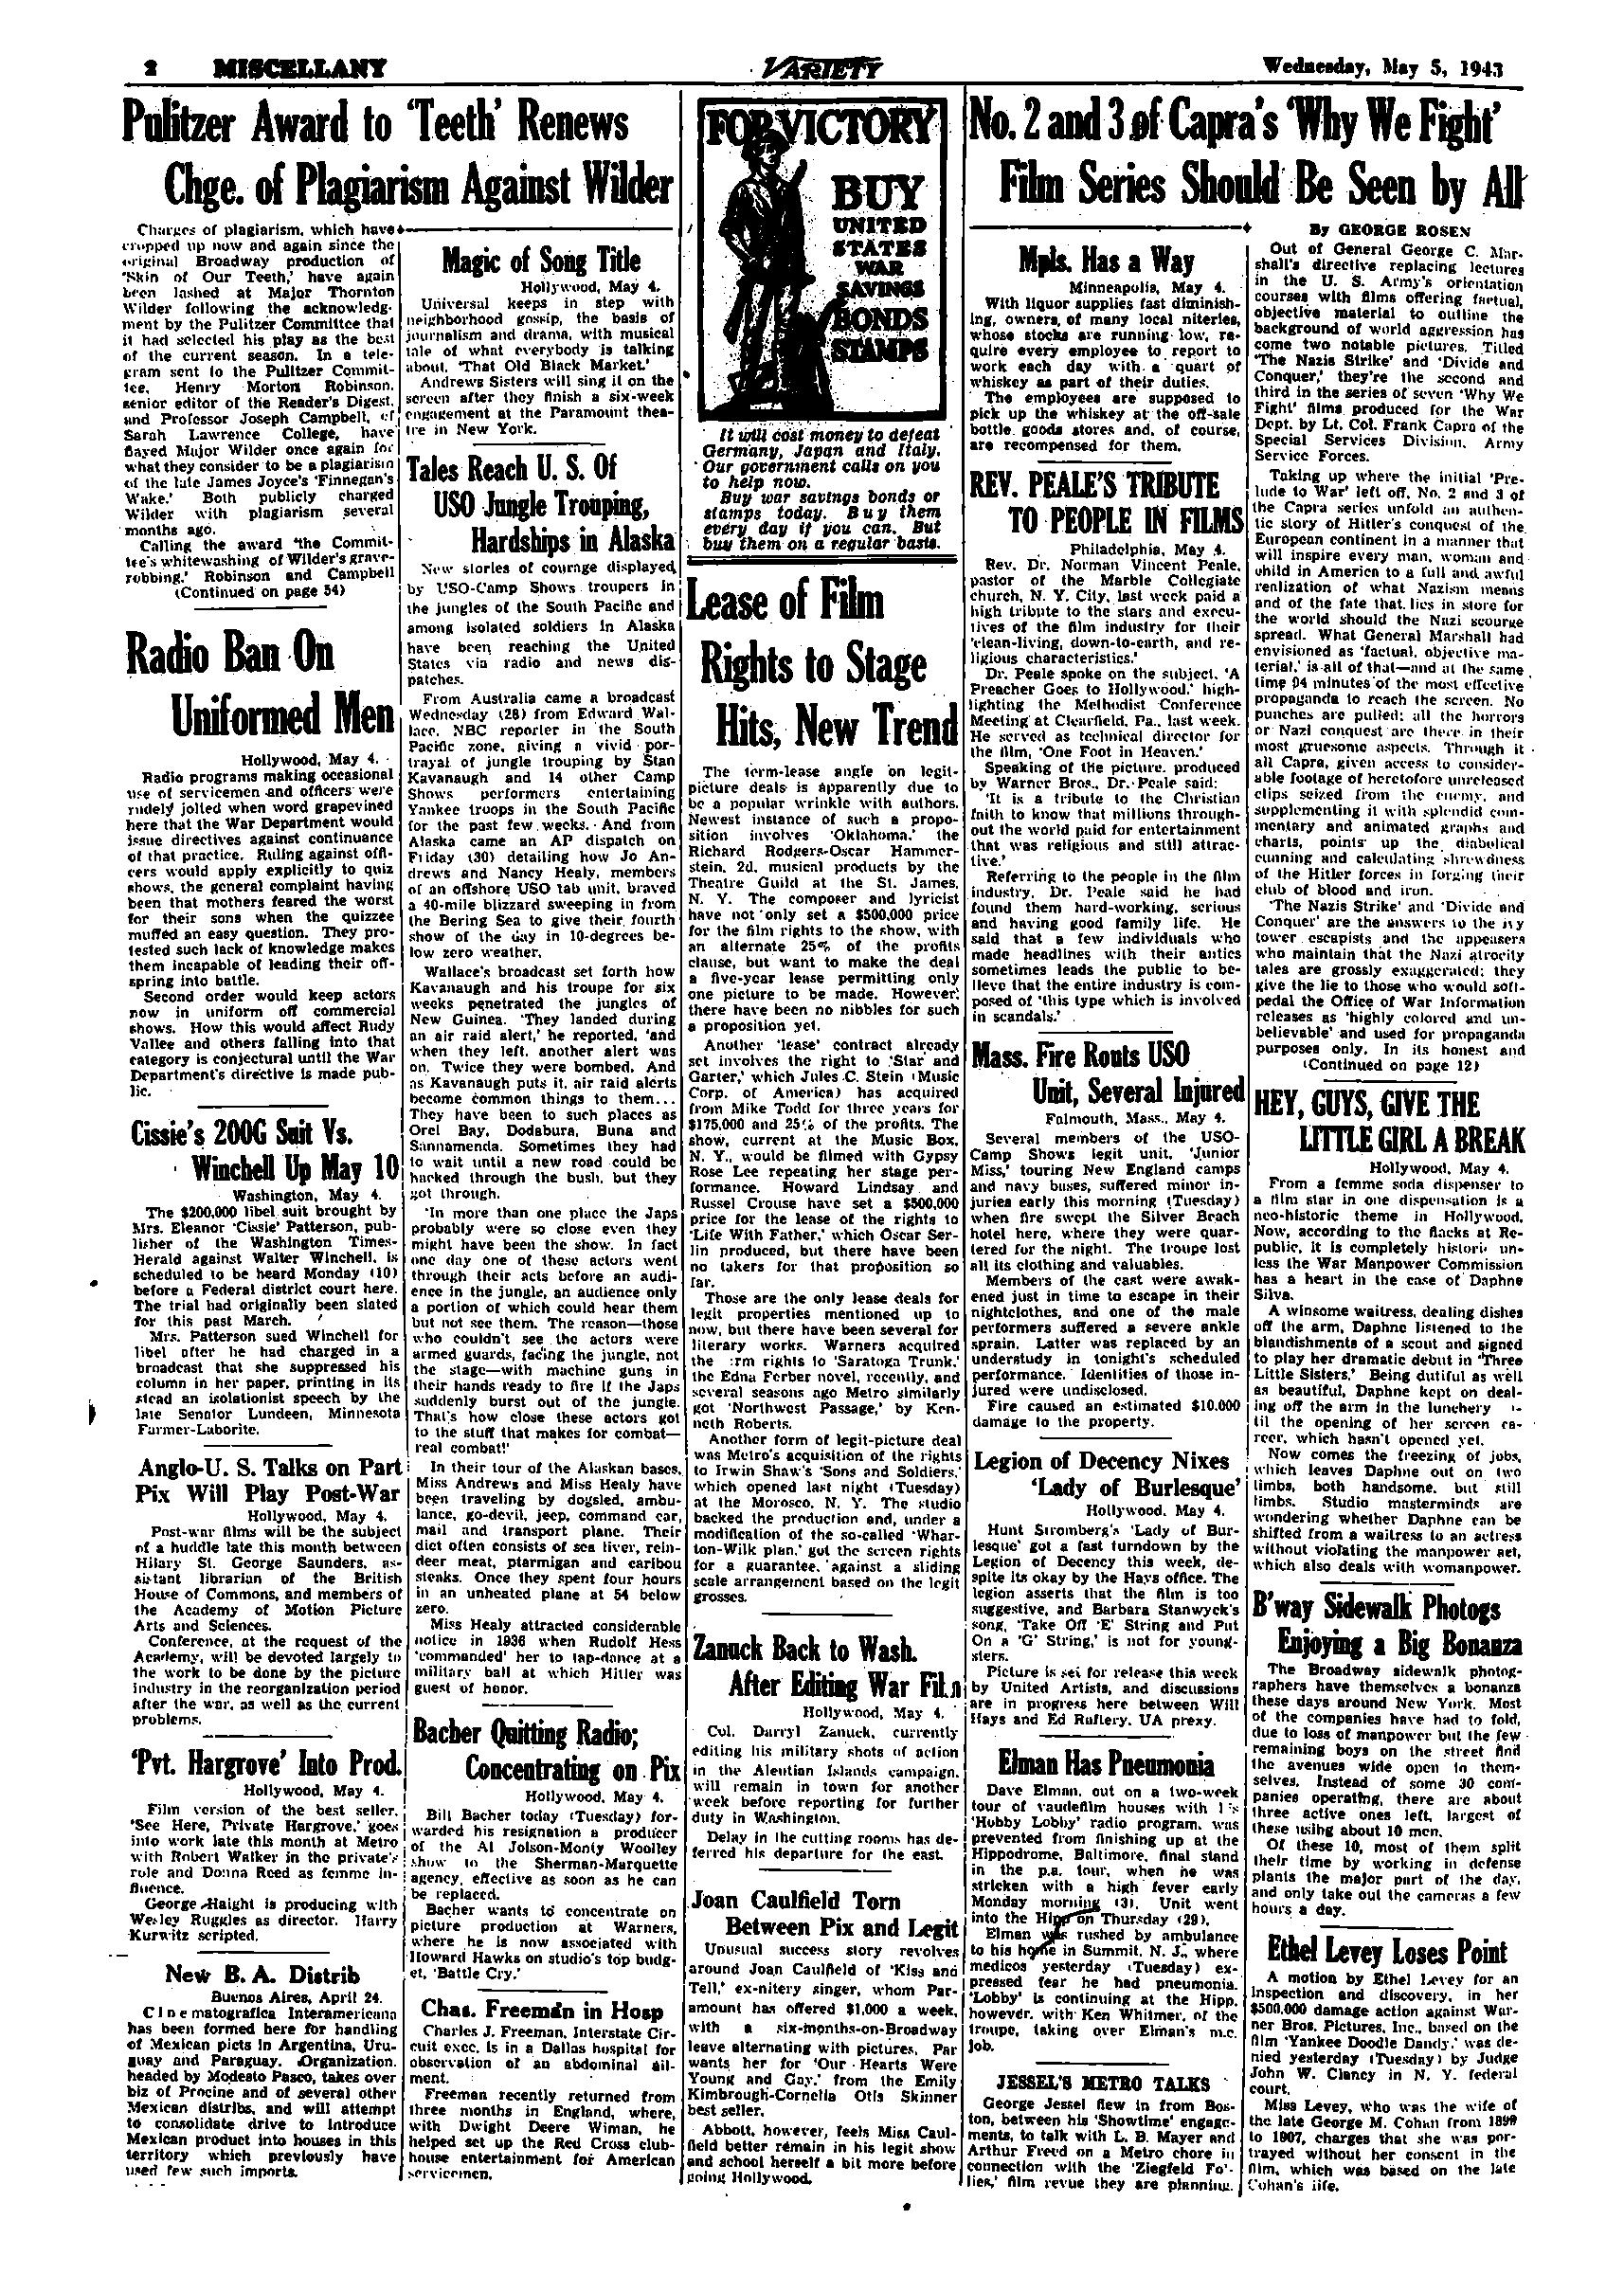 Variety (May 1943)